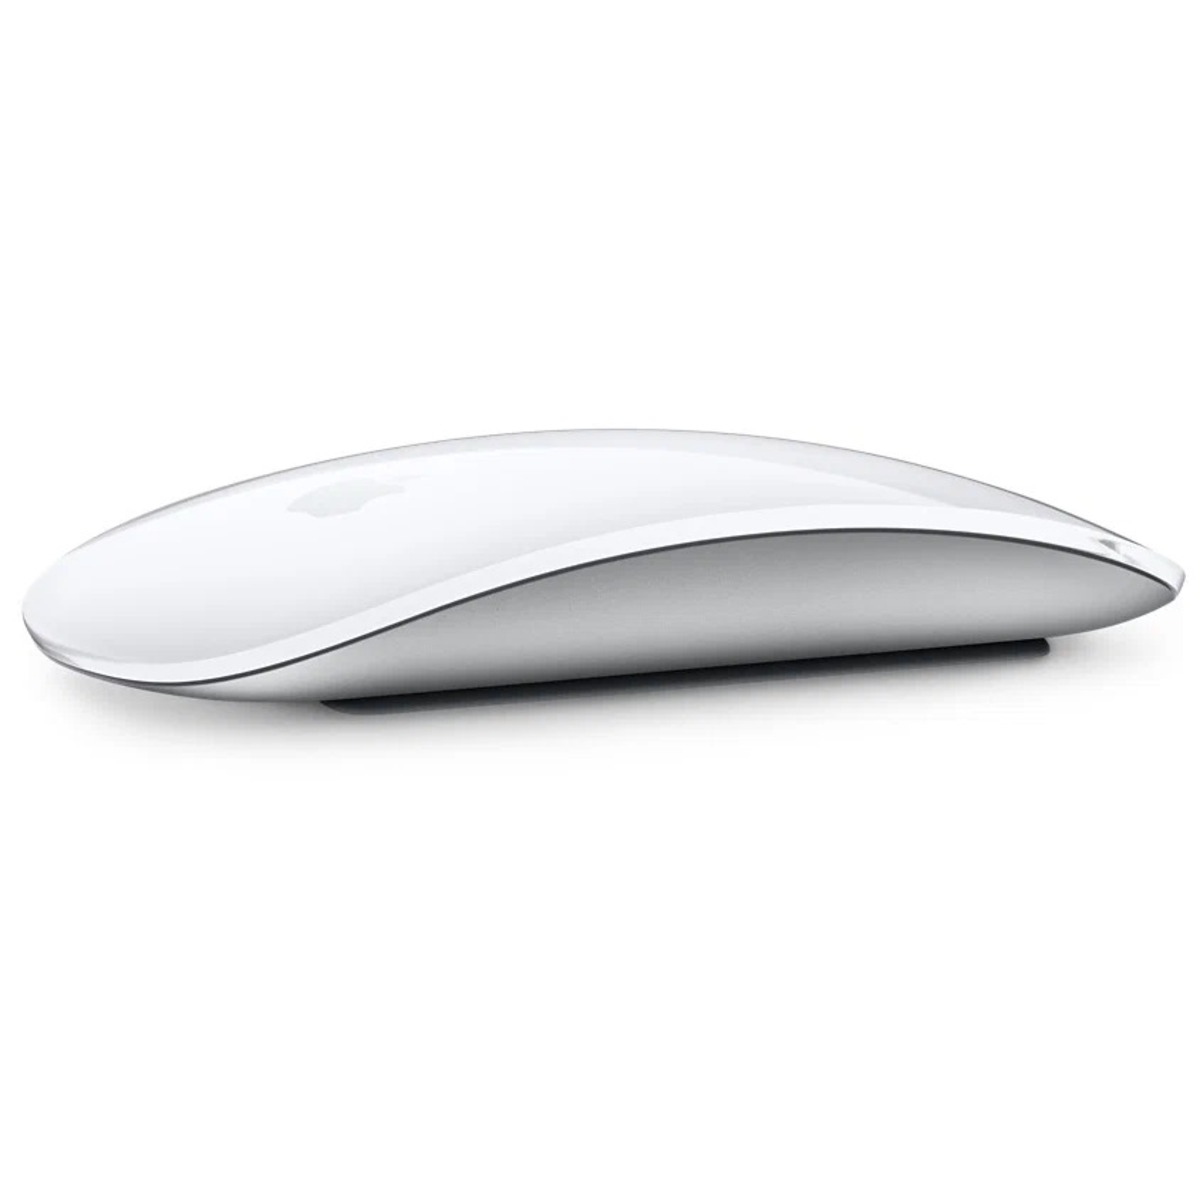 Мышь Apple Magic Mouse 3 (Цвет: White)